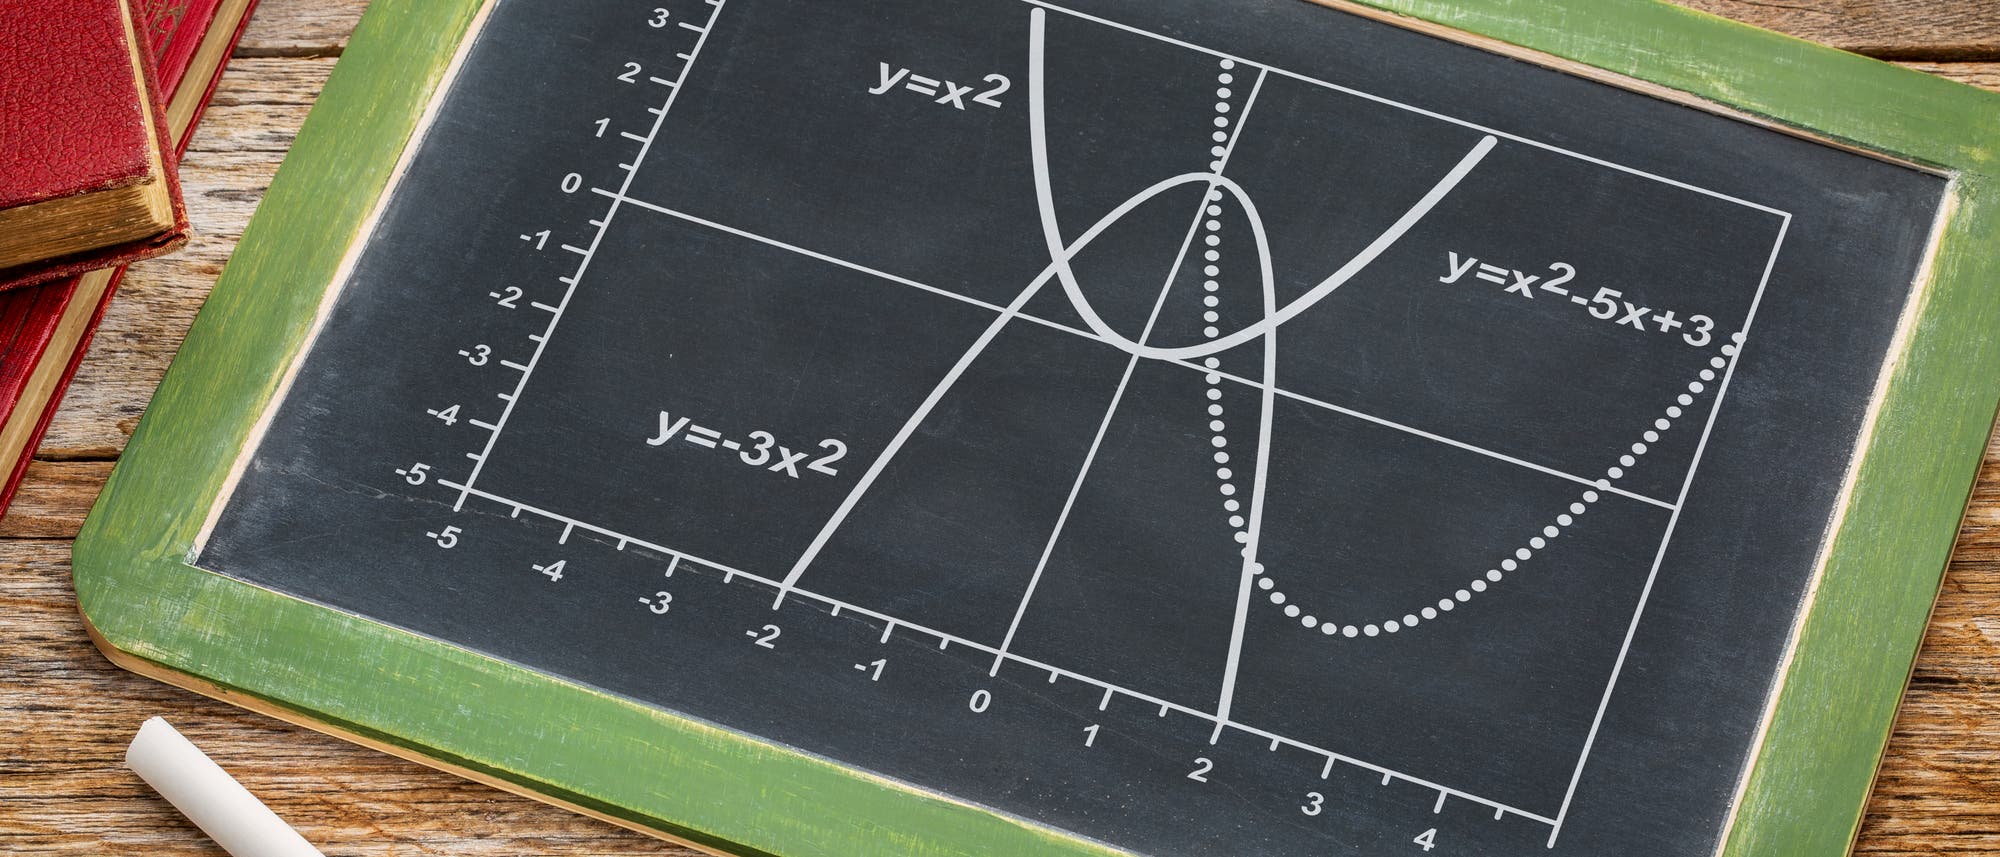 Mehrere Parabeln und deren Funktionsgleichungen auf einer Tafel